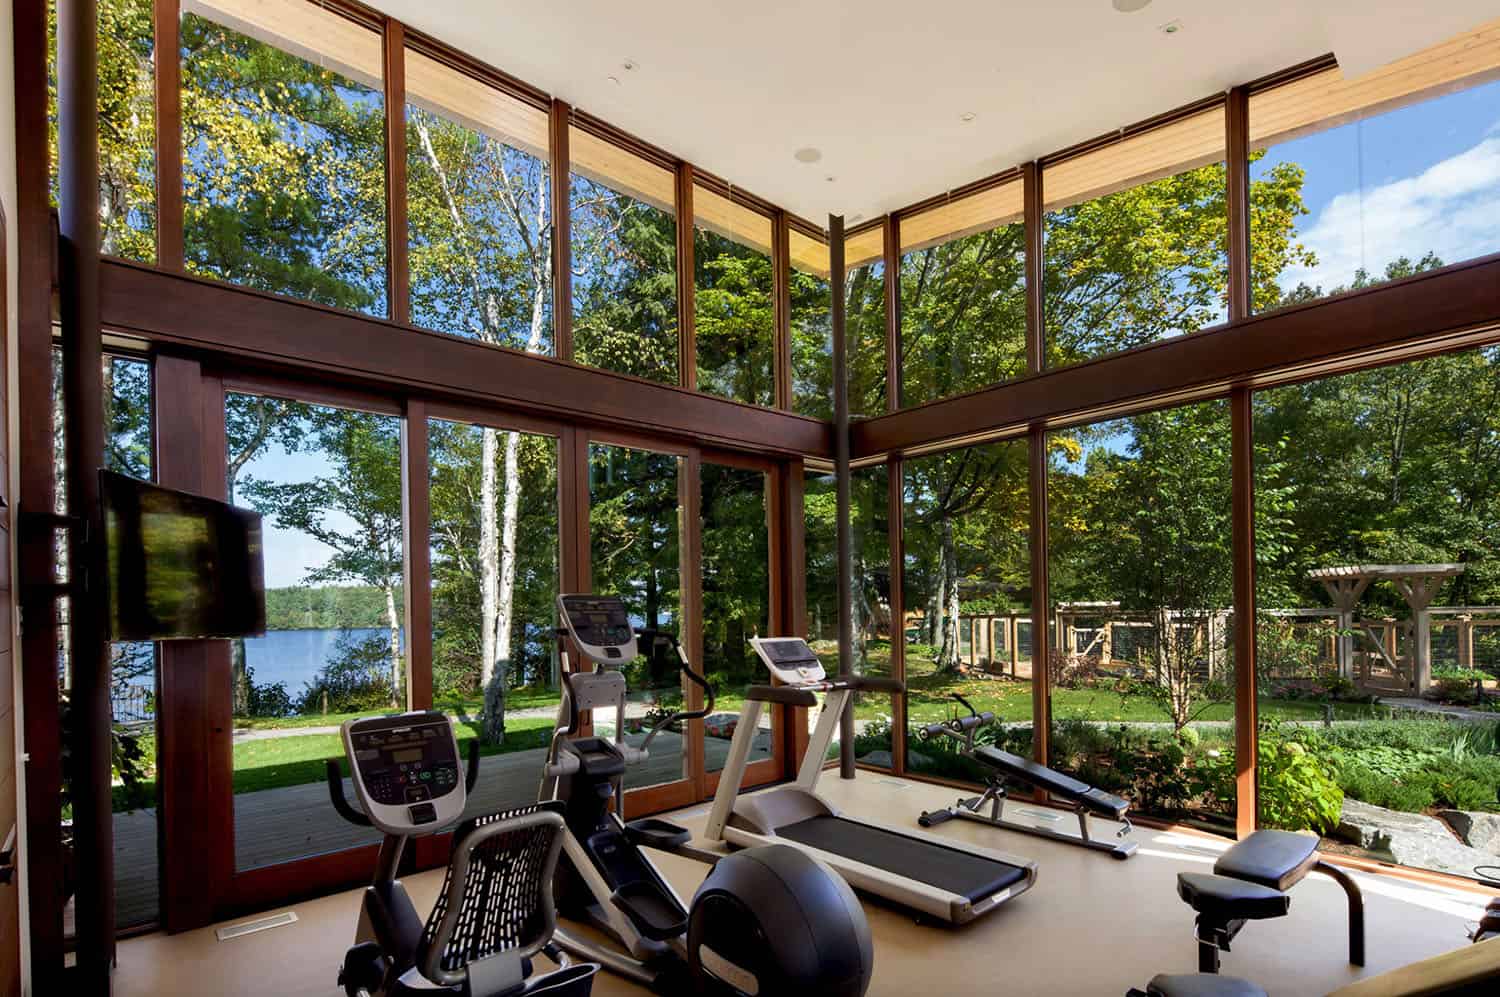 contemporary-home-gym